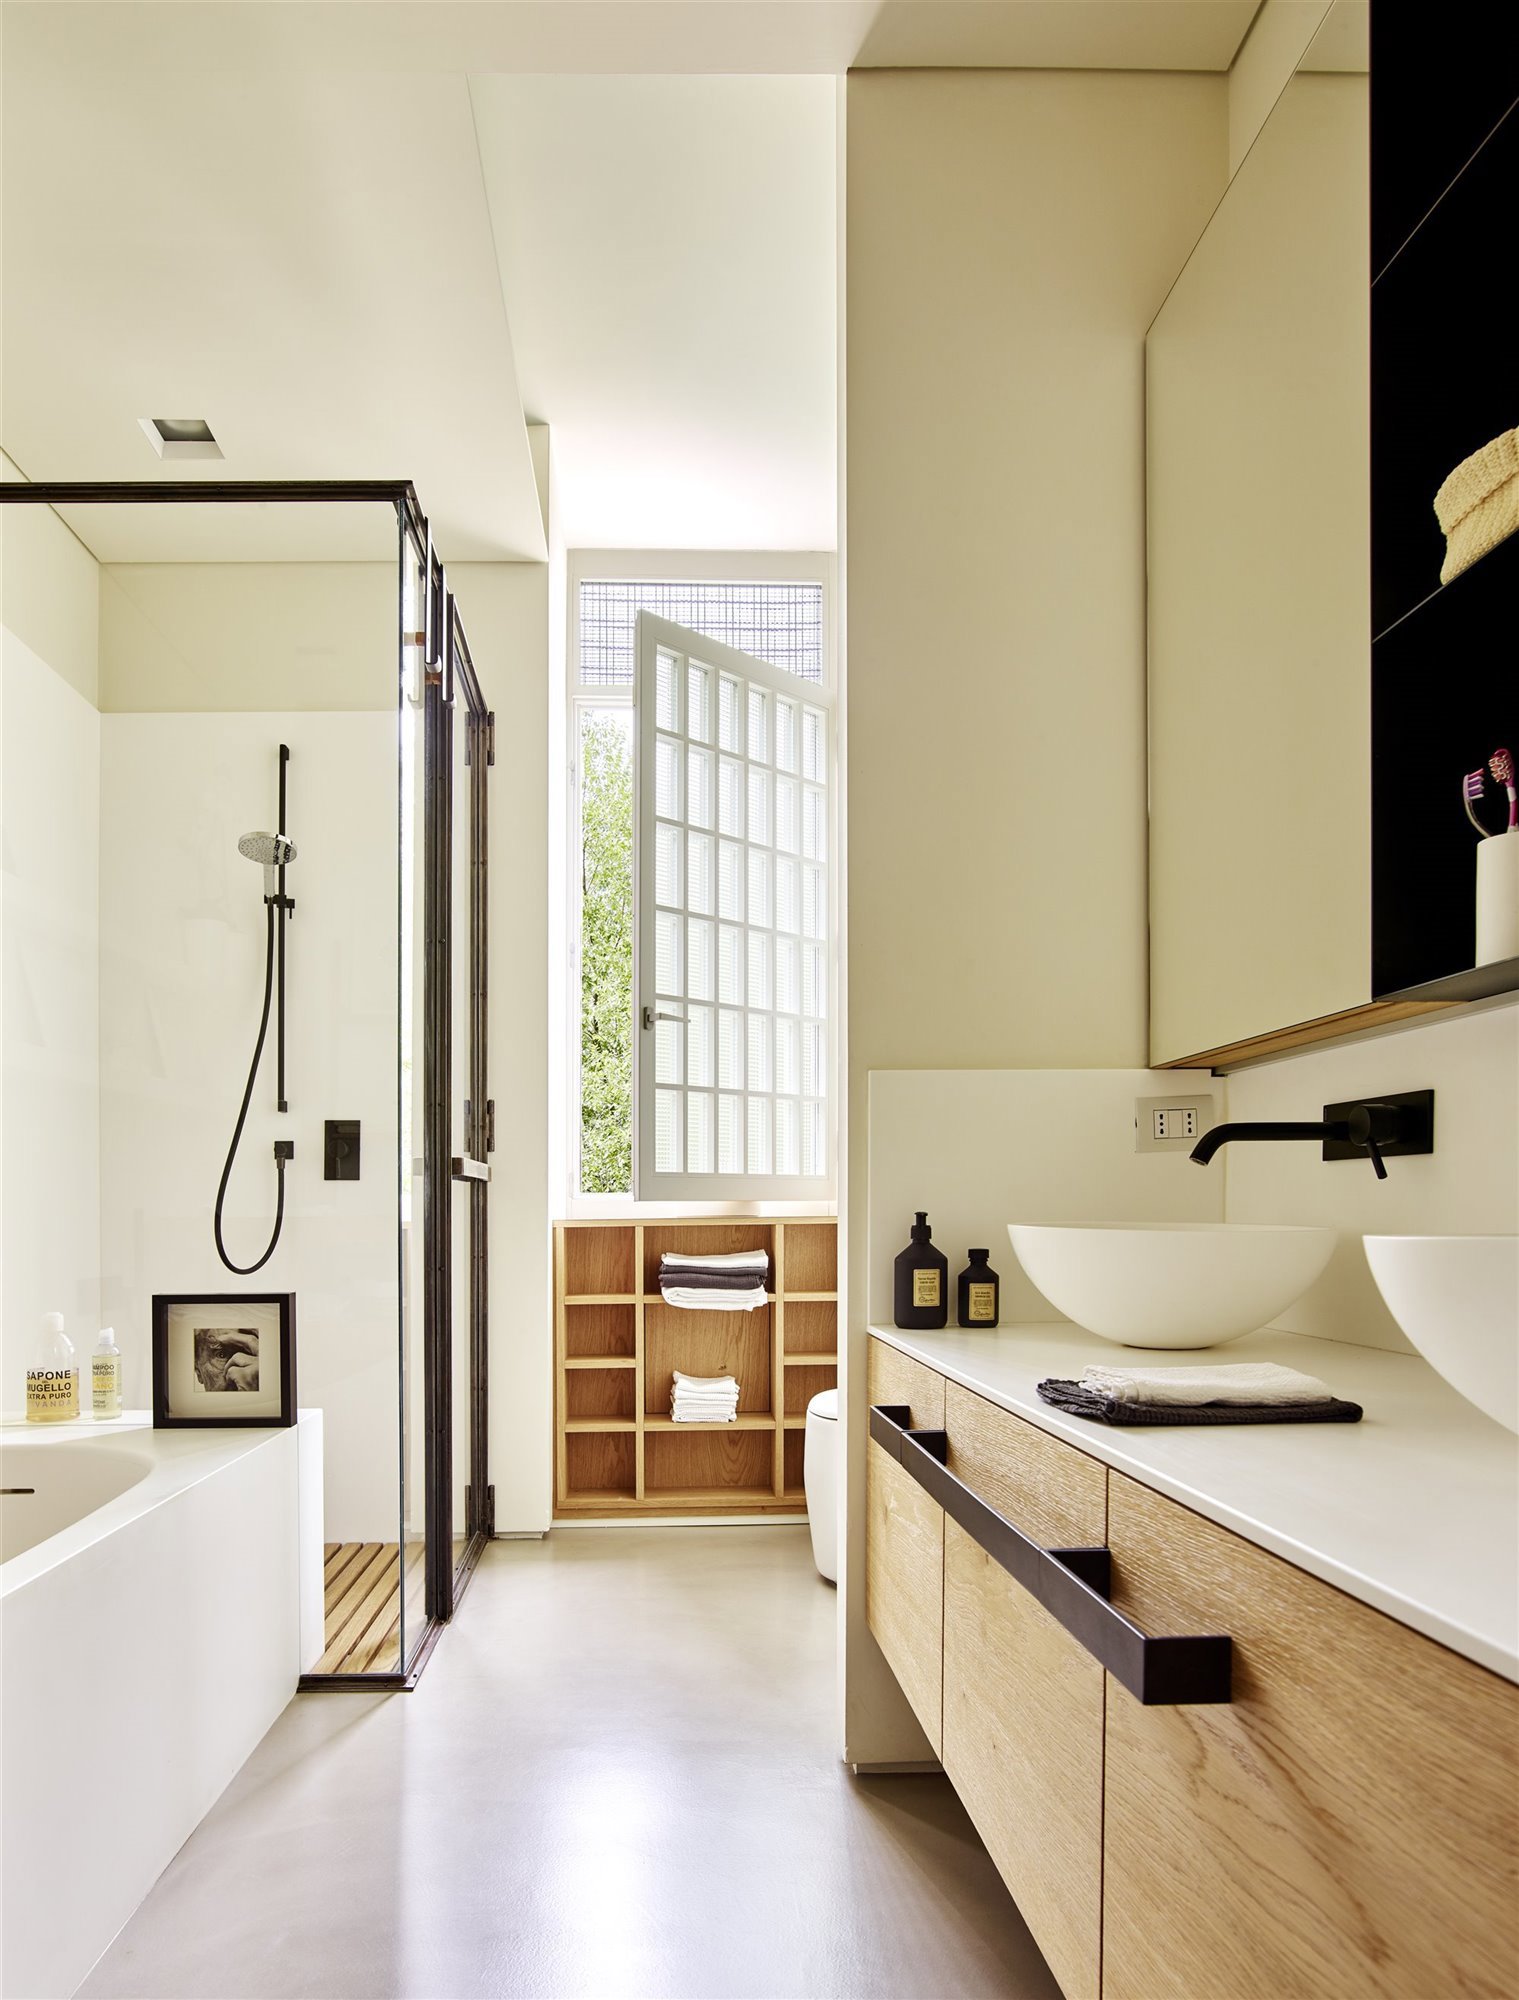 bano moderno en tonos blancos y madera con ducha con revestimientos metalicos bañera blanca